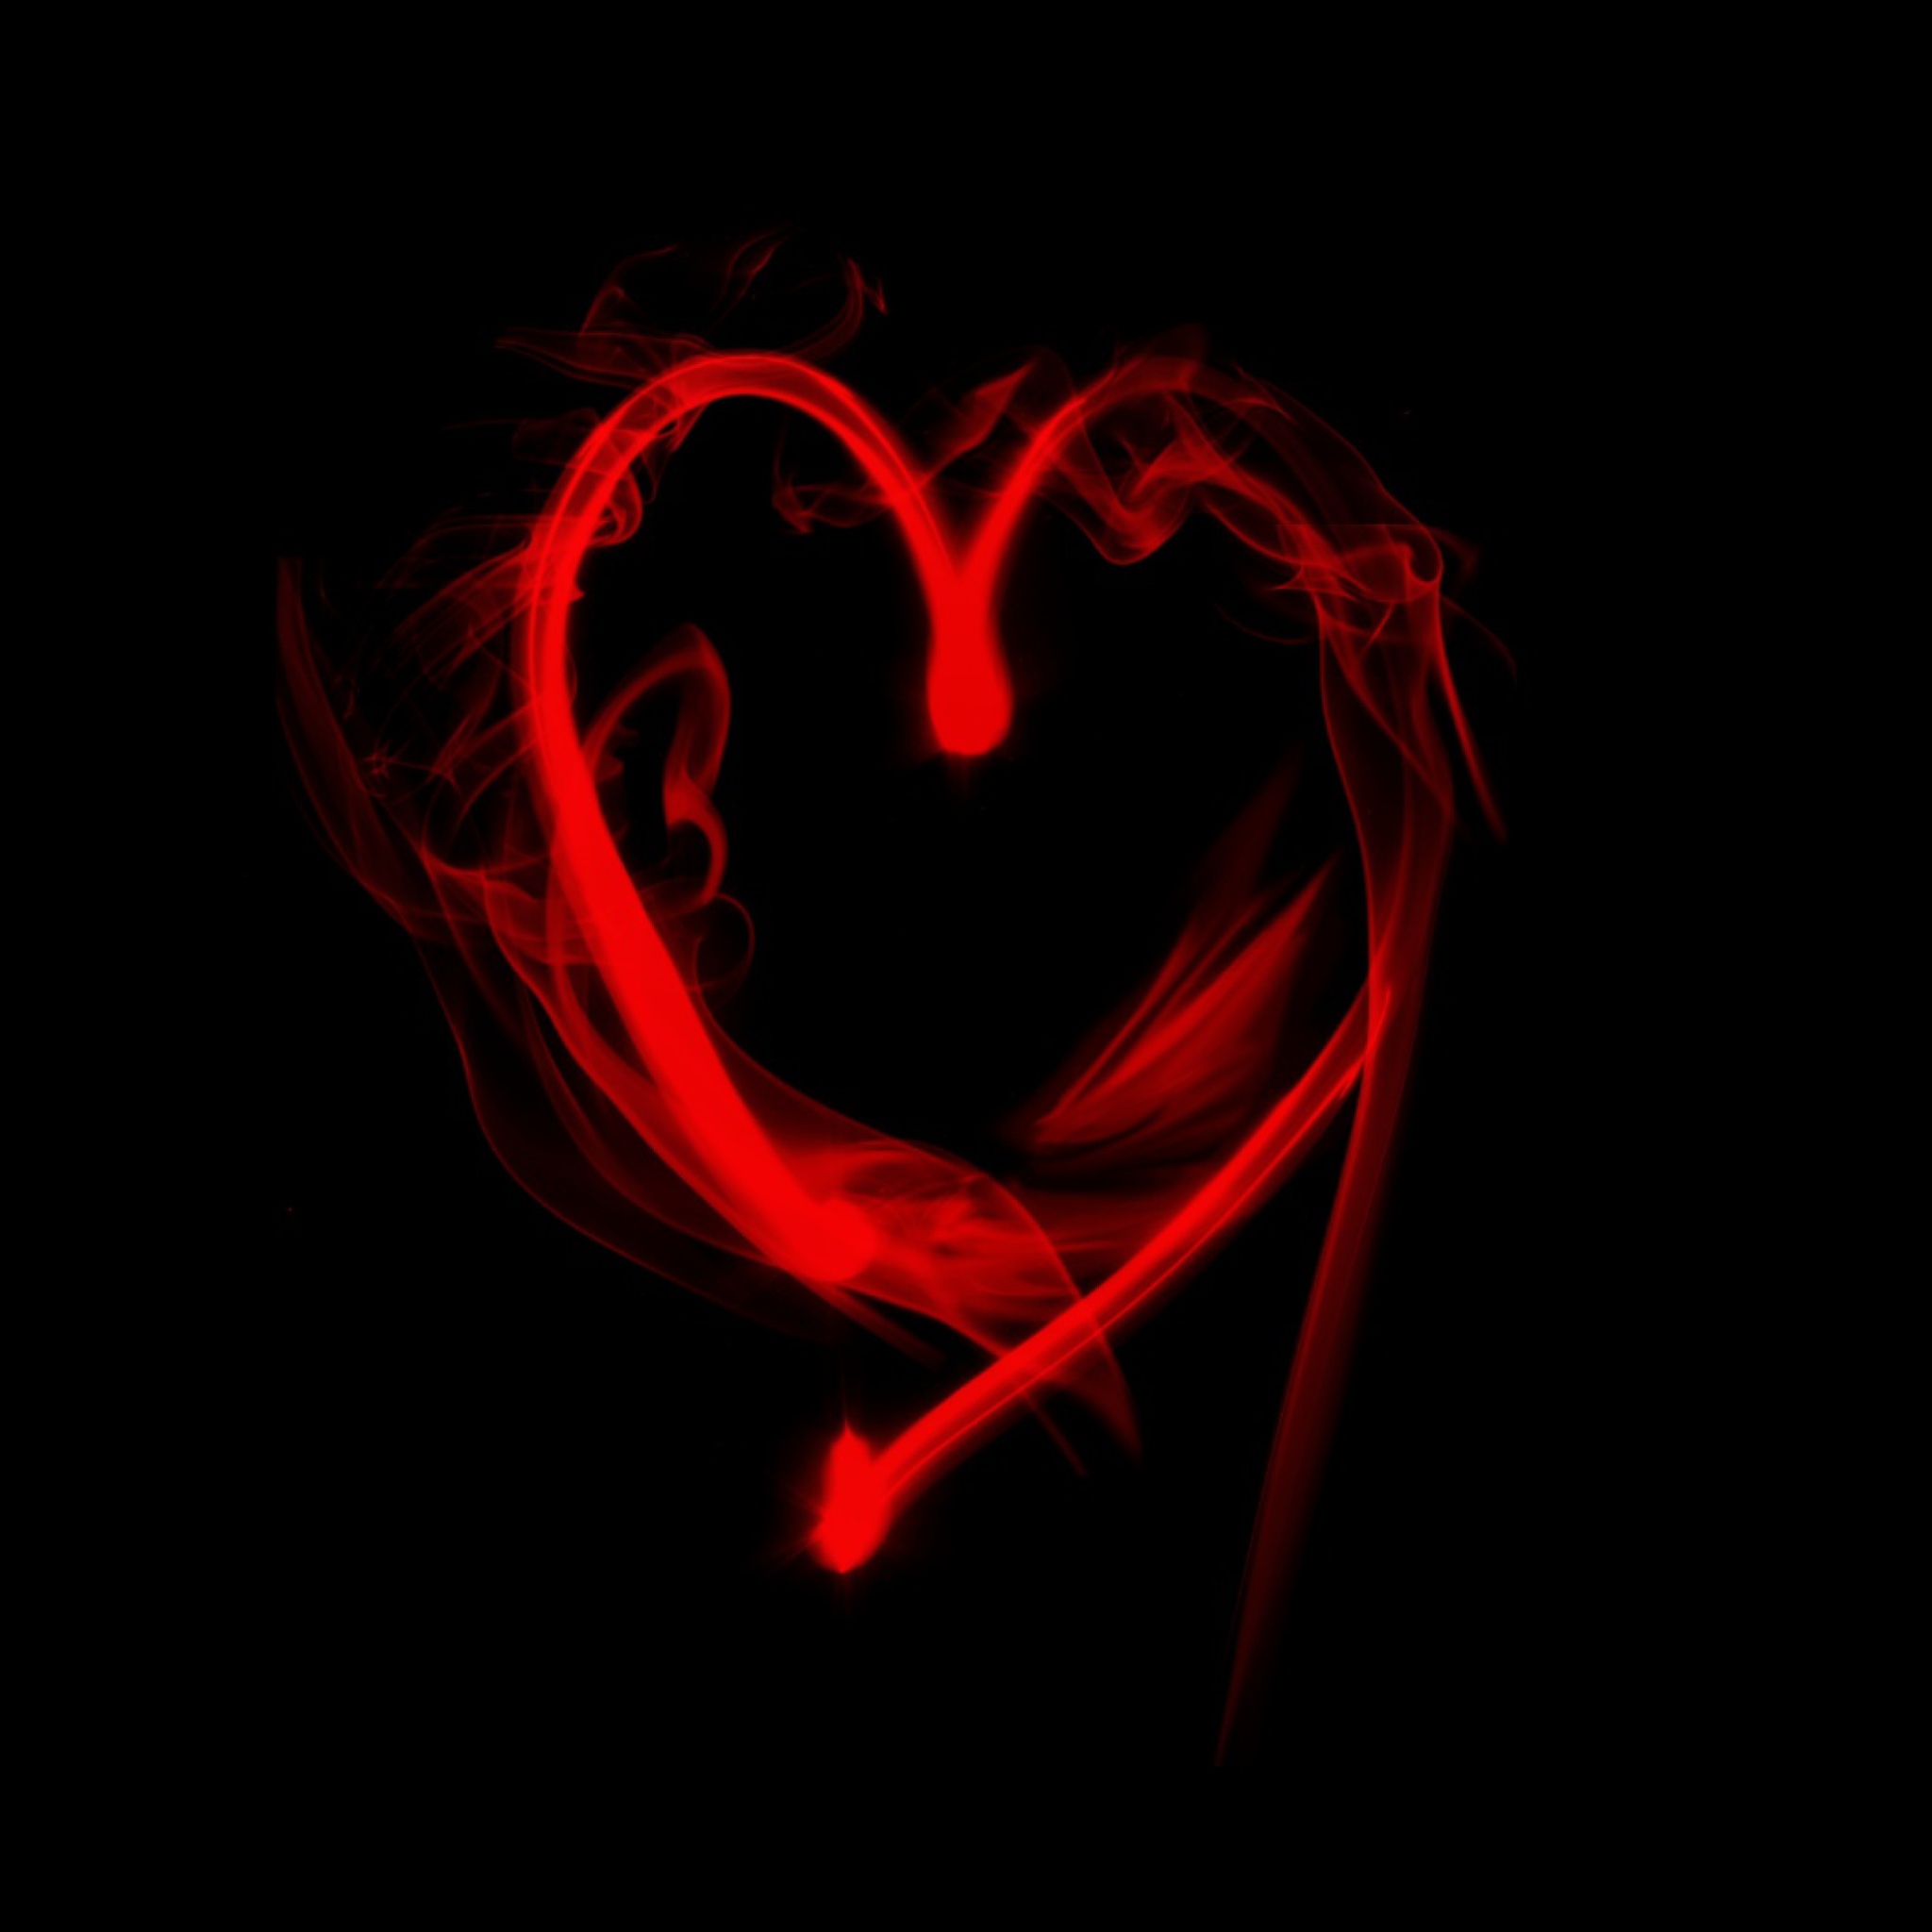 Das Flaming Heart Wallpaper 2048x2048